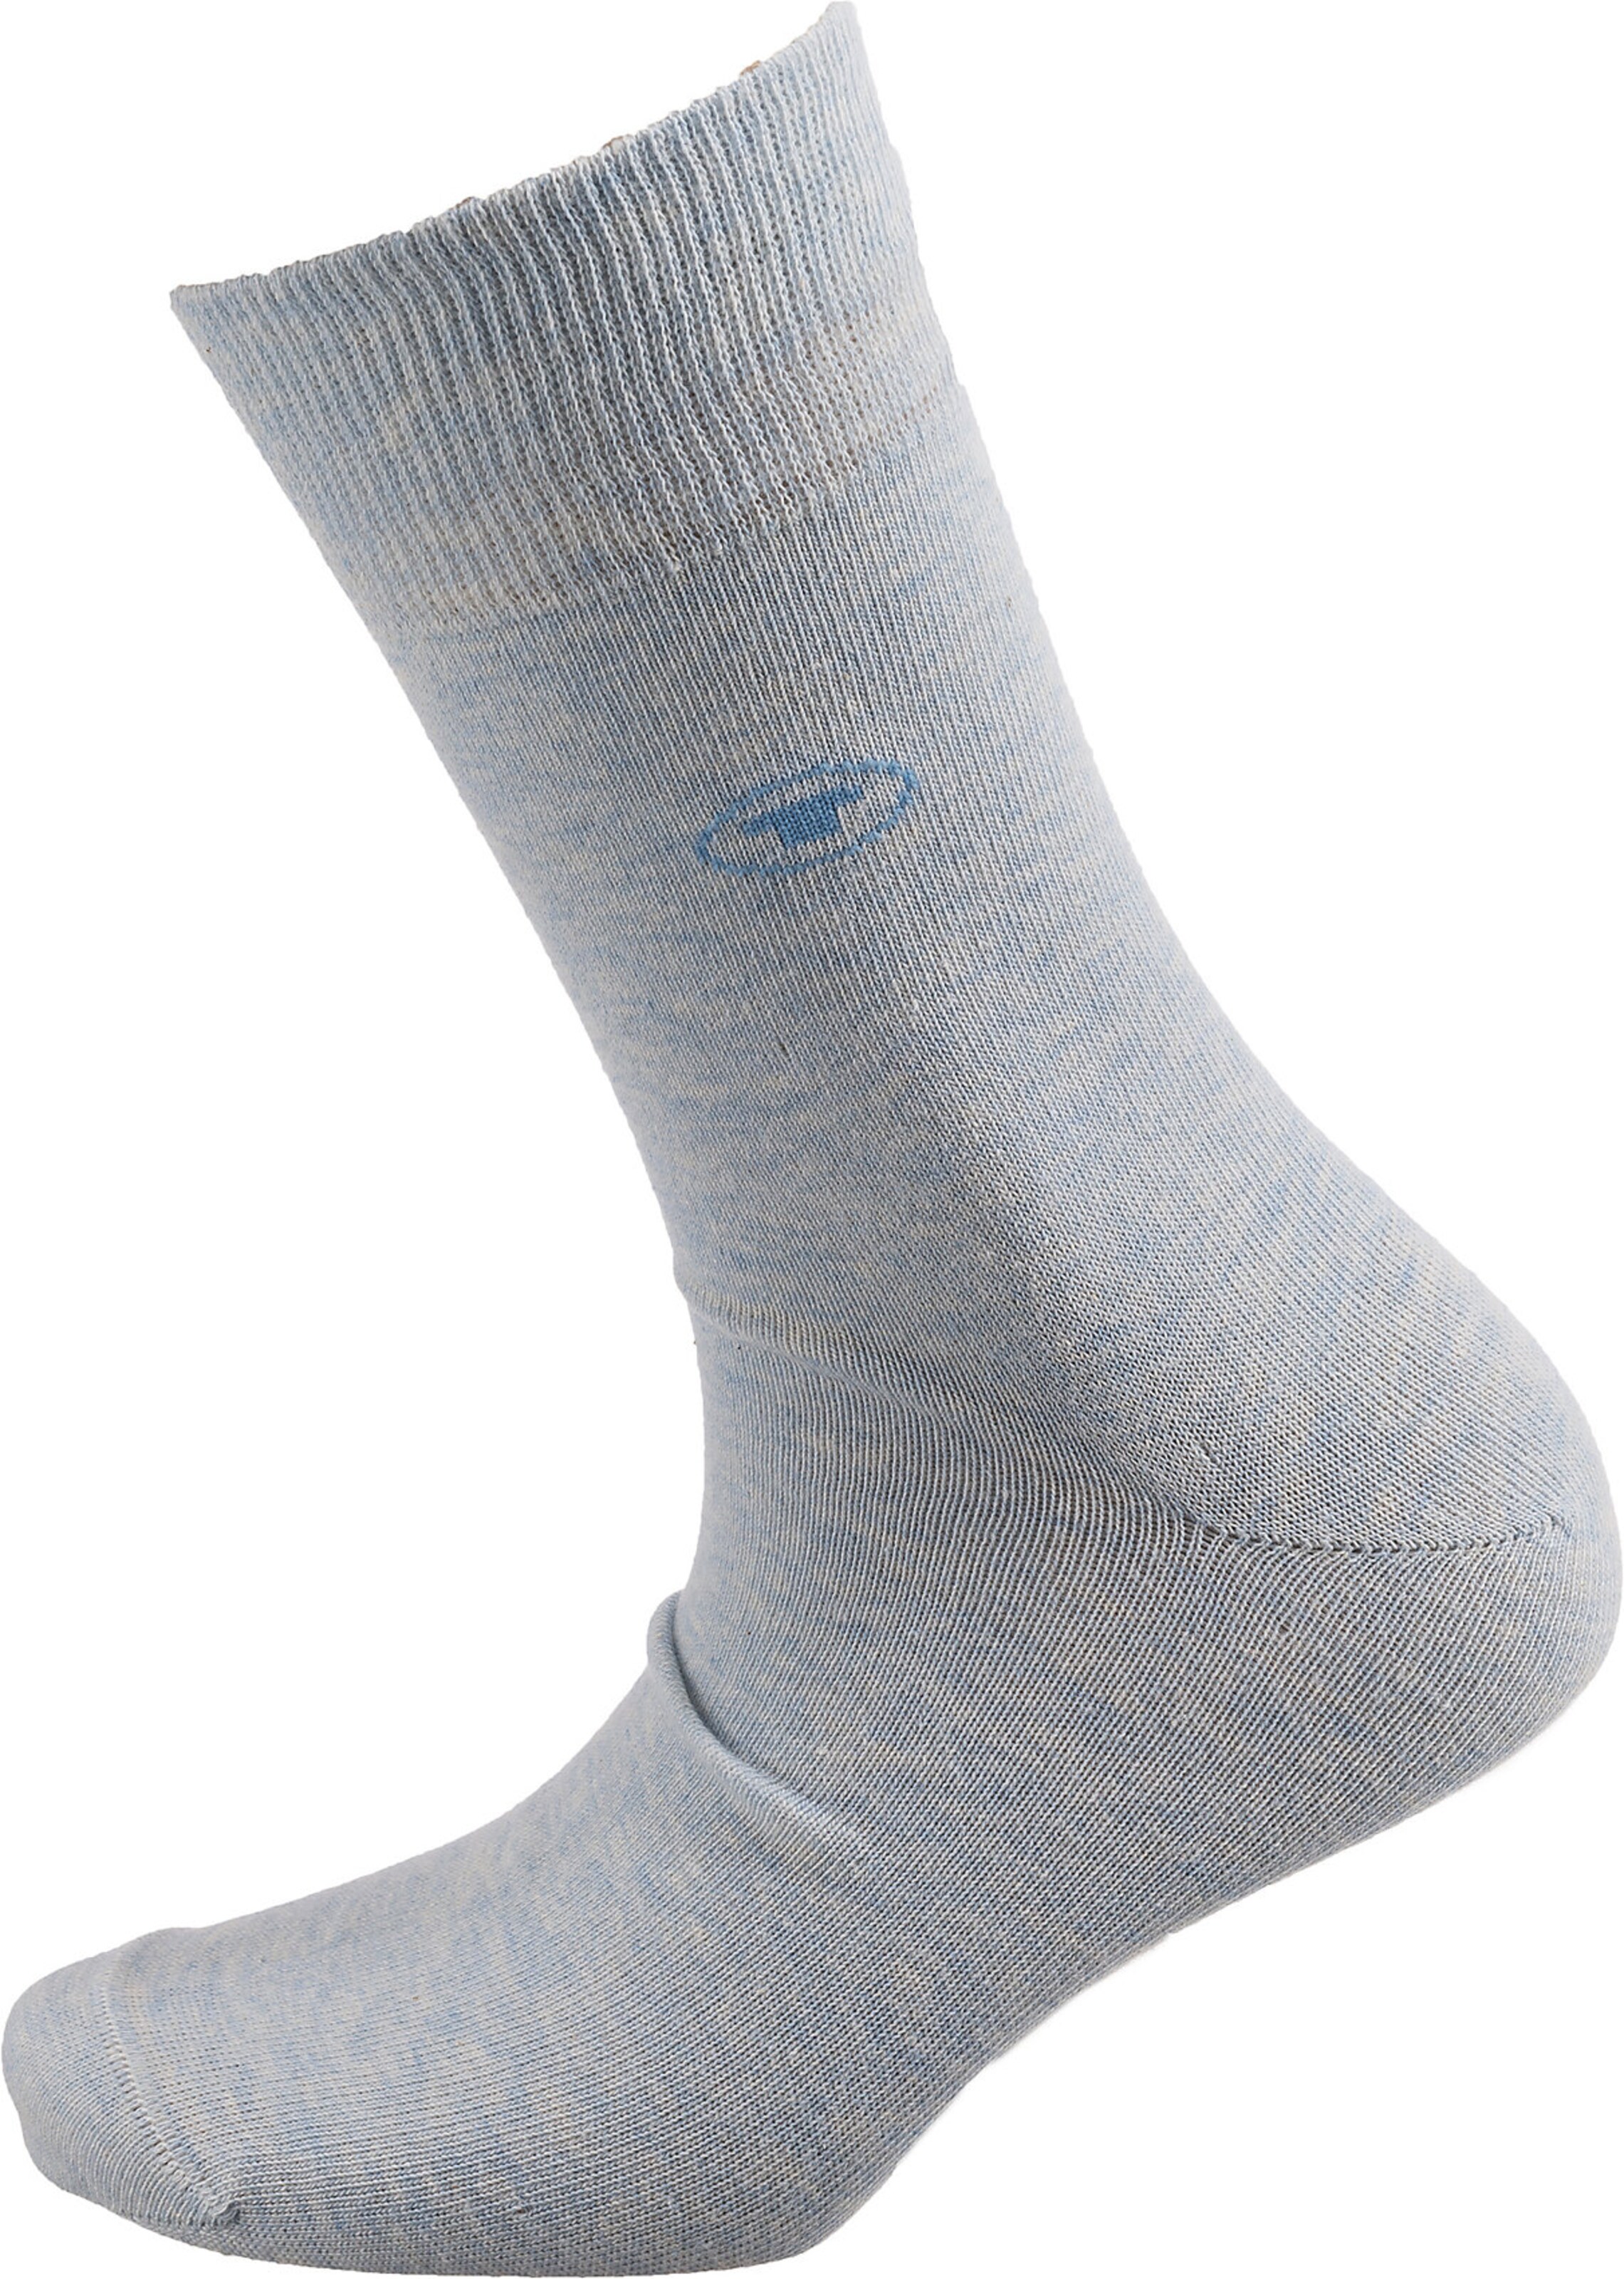 Männer Wäsche TOM TAILOR Socken in Blau, Navy, Nachtblau, Hellblau, Blaumeliert - CM86501